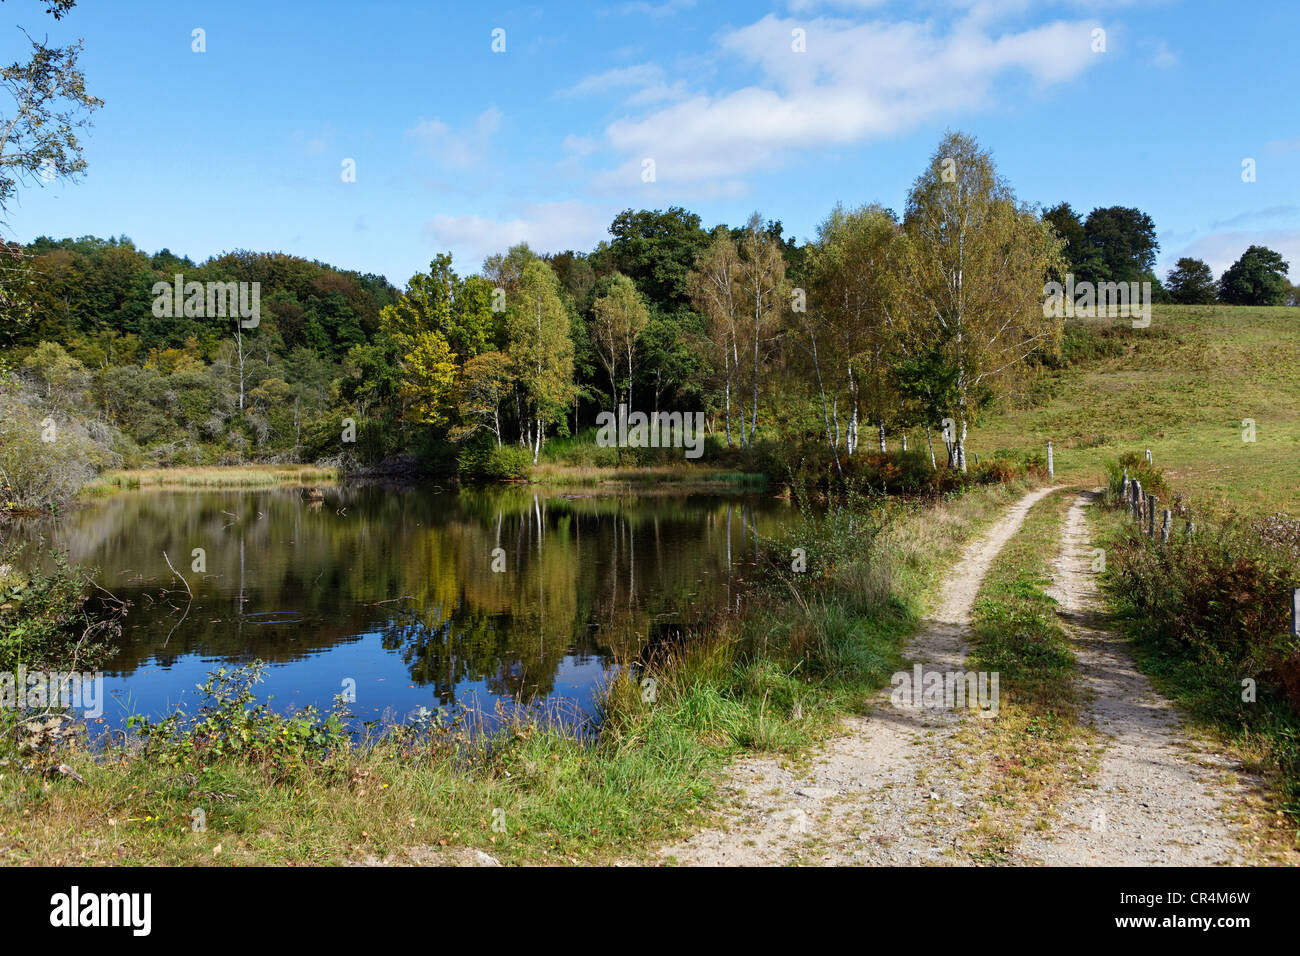 Teich in der Nähe von Ussel, Parc Naturel Regional de Millevaches En Limousin Millevaches regionalen natürlichen Parks, Frankreich Stockfoto